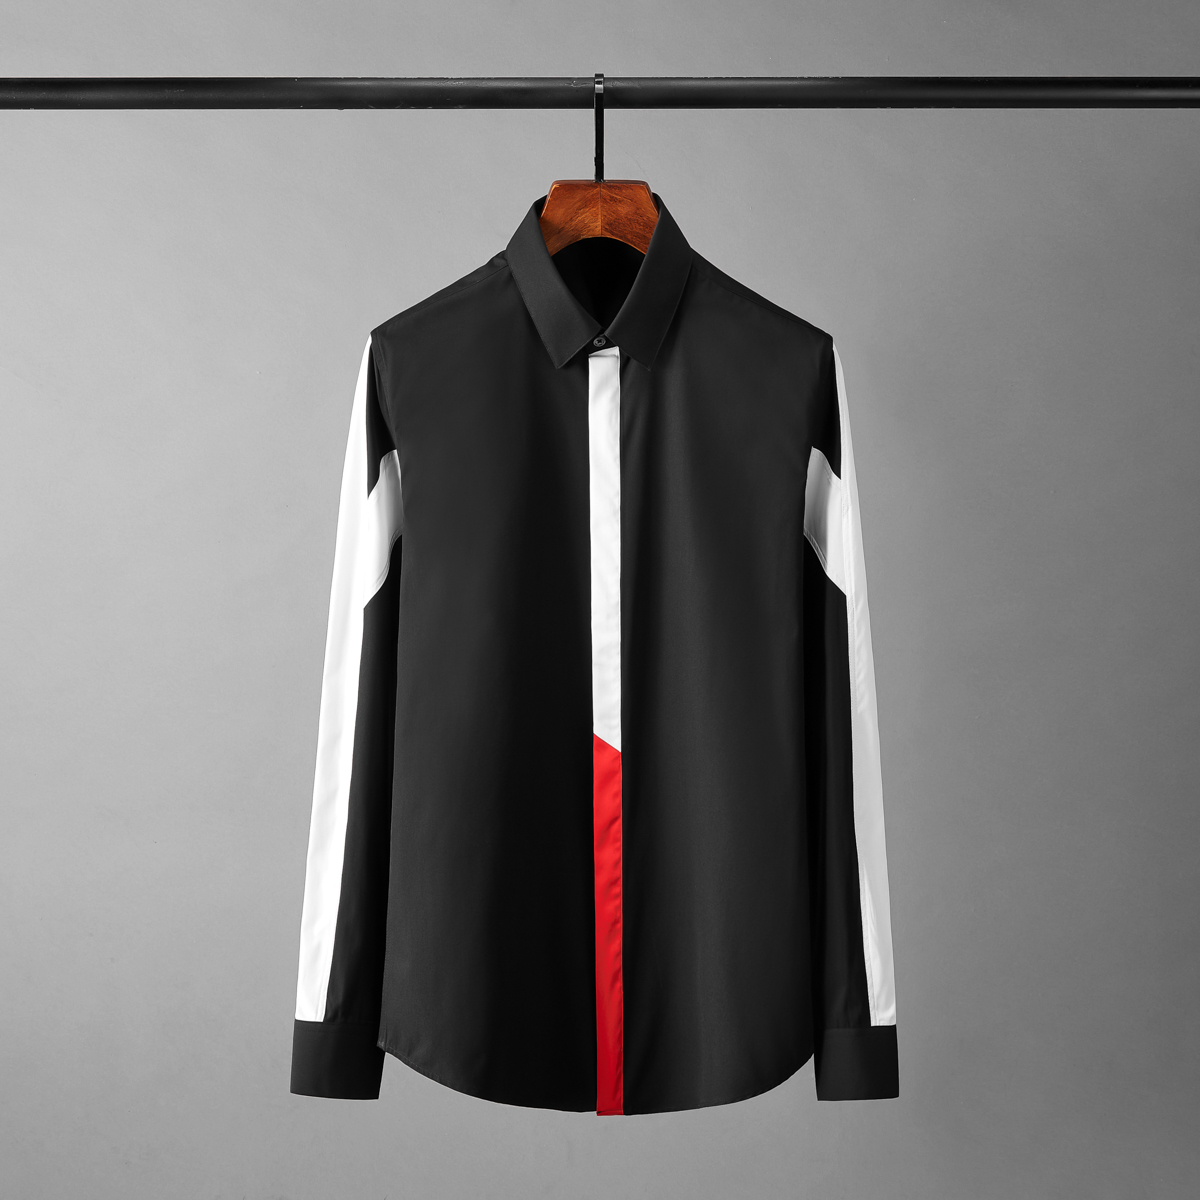 새로운 코튼 맨 셔츠 럭셔리 패치 워크 디자인 긴 소매 파티 남성 드레스 셔츠 패션 슬림 피트 캐주얼 남성 셔츠 4xl